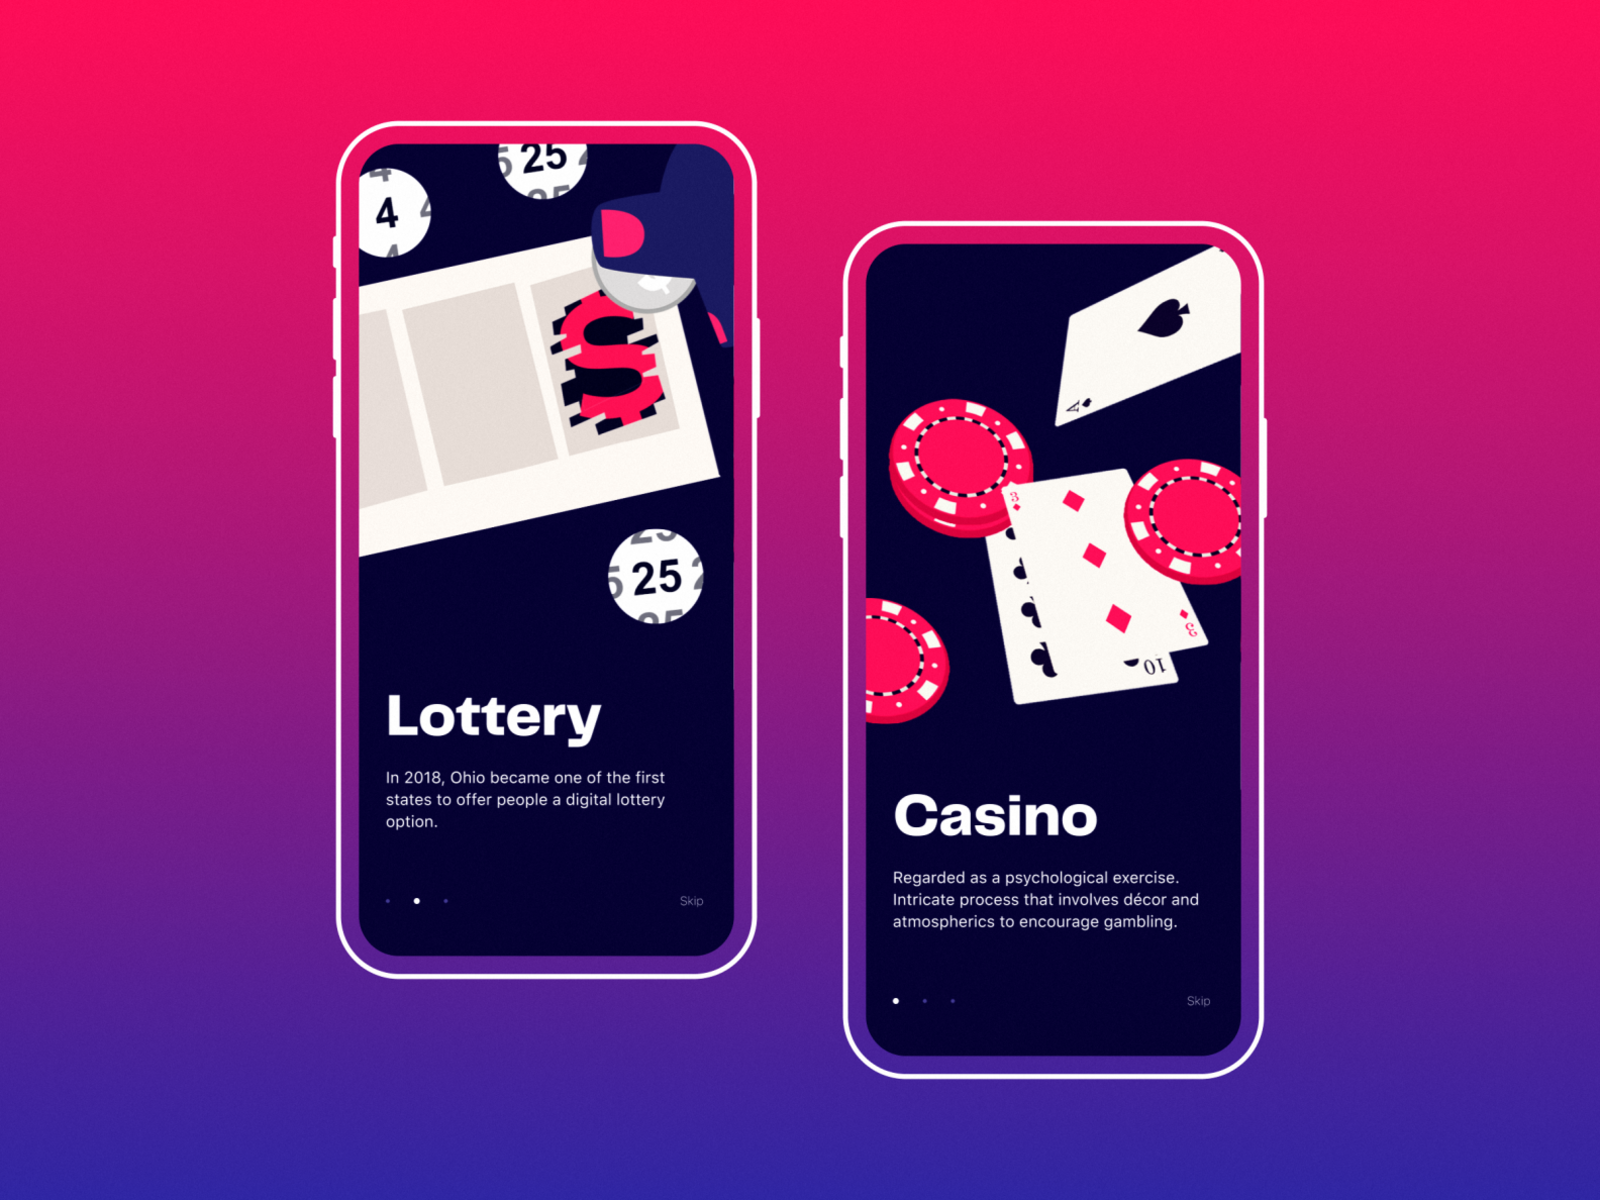 Mobile casino gaming. Мобильное казино. Мобильное приложение казино. Casino mobile. Гемблинг приложения.